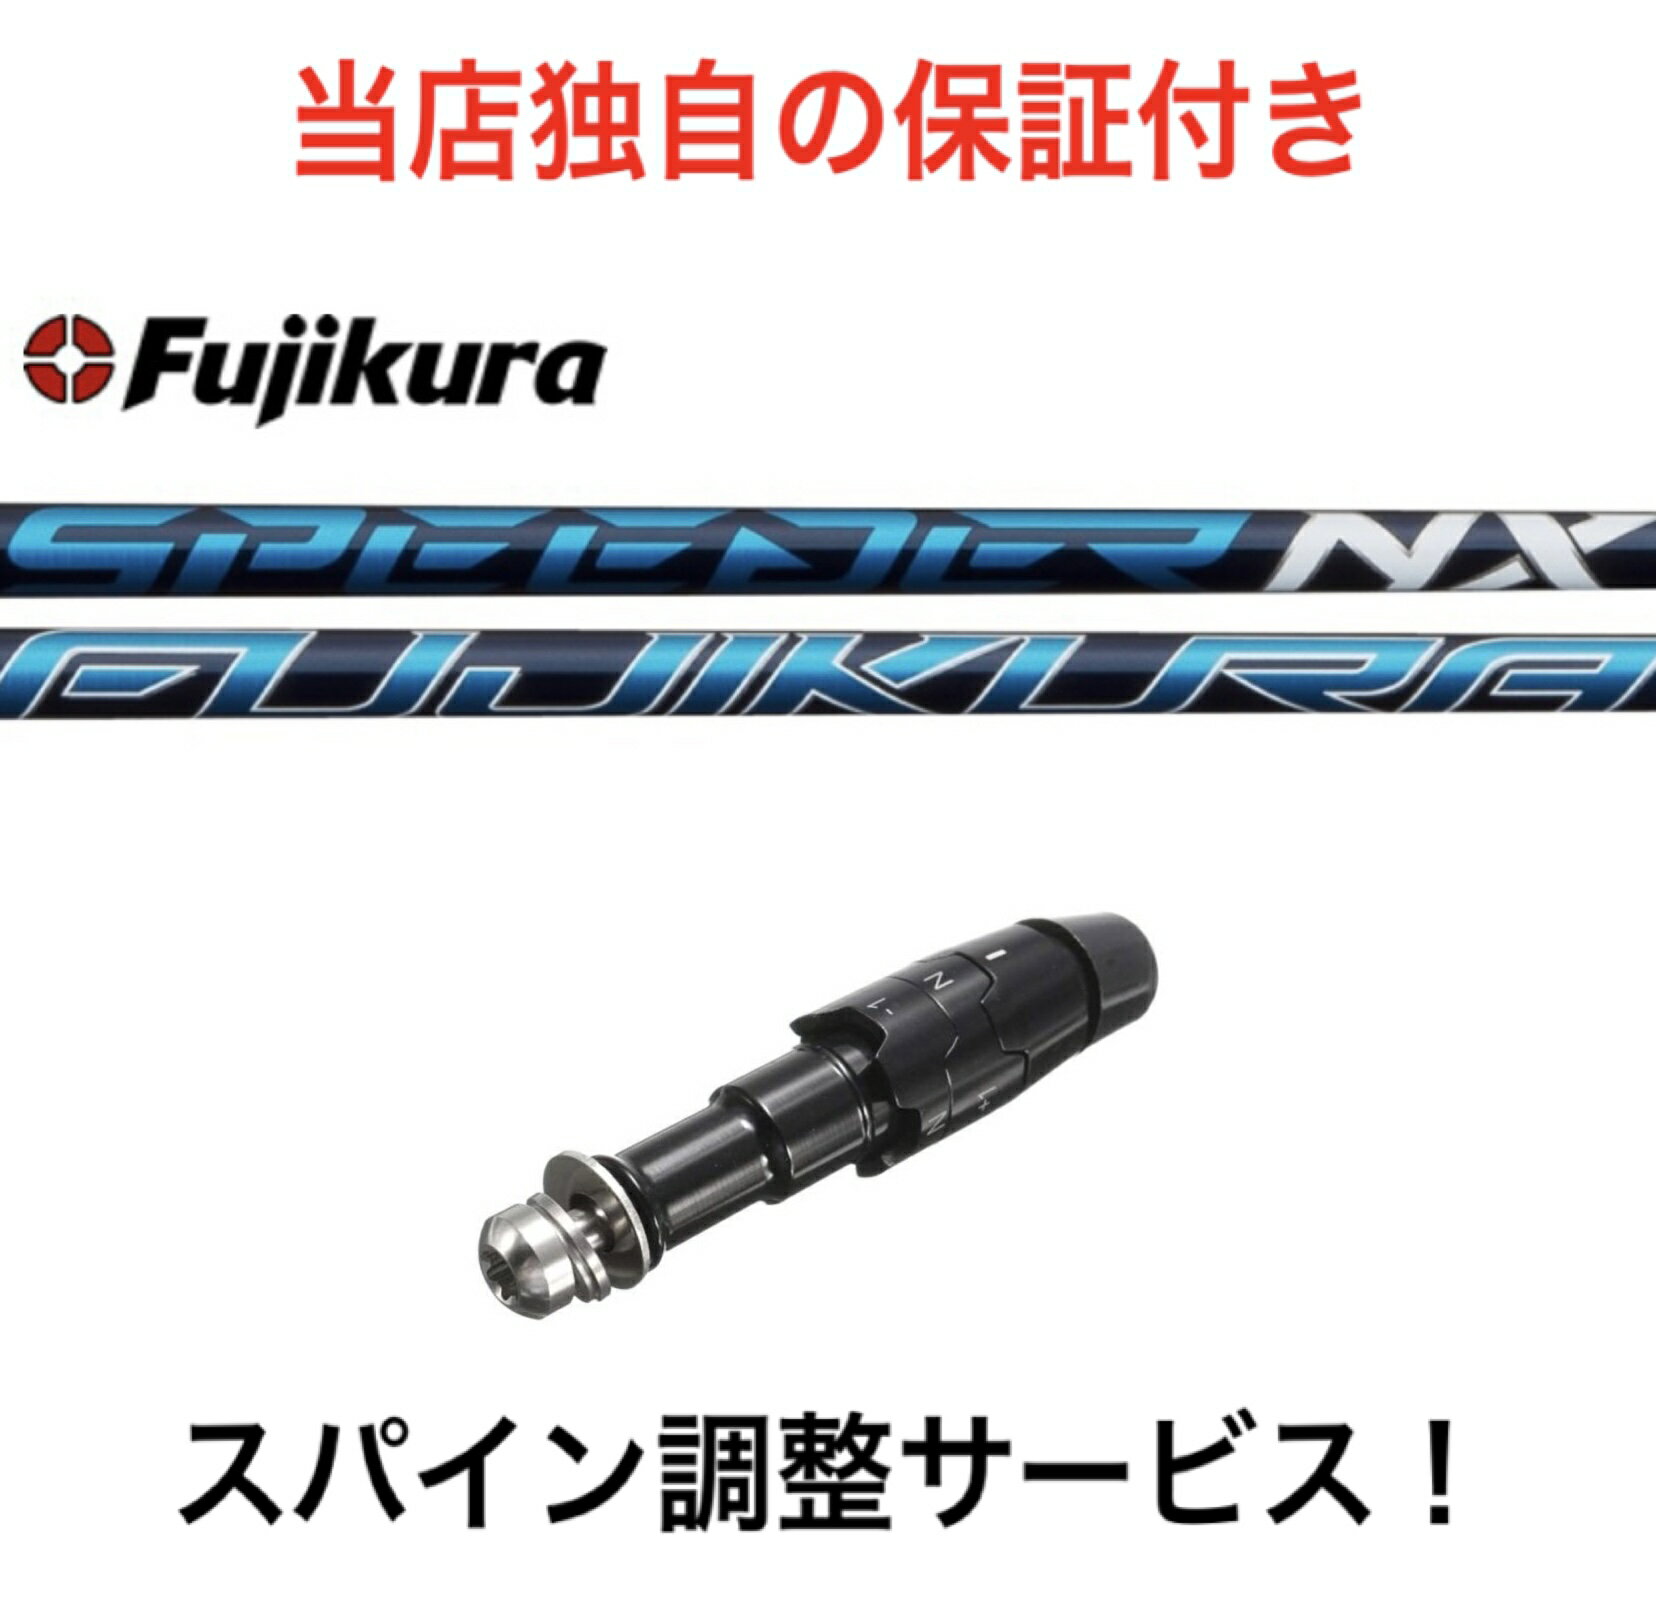 CL  Fujikura SPEEDER NX キャロウェイ パラダイム Ai スモーク パラダイム エピック系 マーベリック系対応 スリーブ付 シャフト ドライバー用 フジクラ スピーダーNX ゴルフ スピーダー